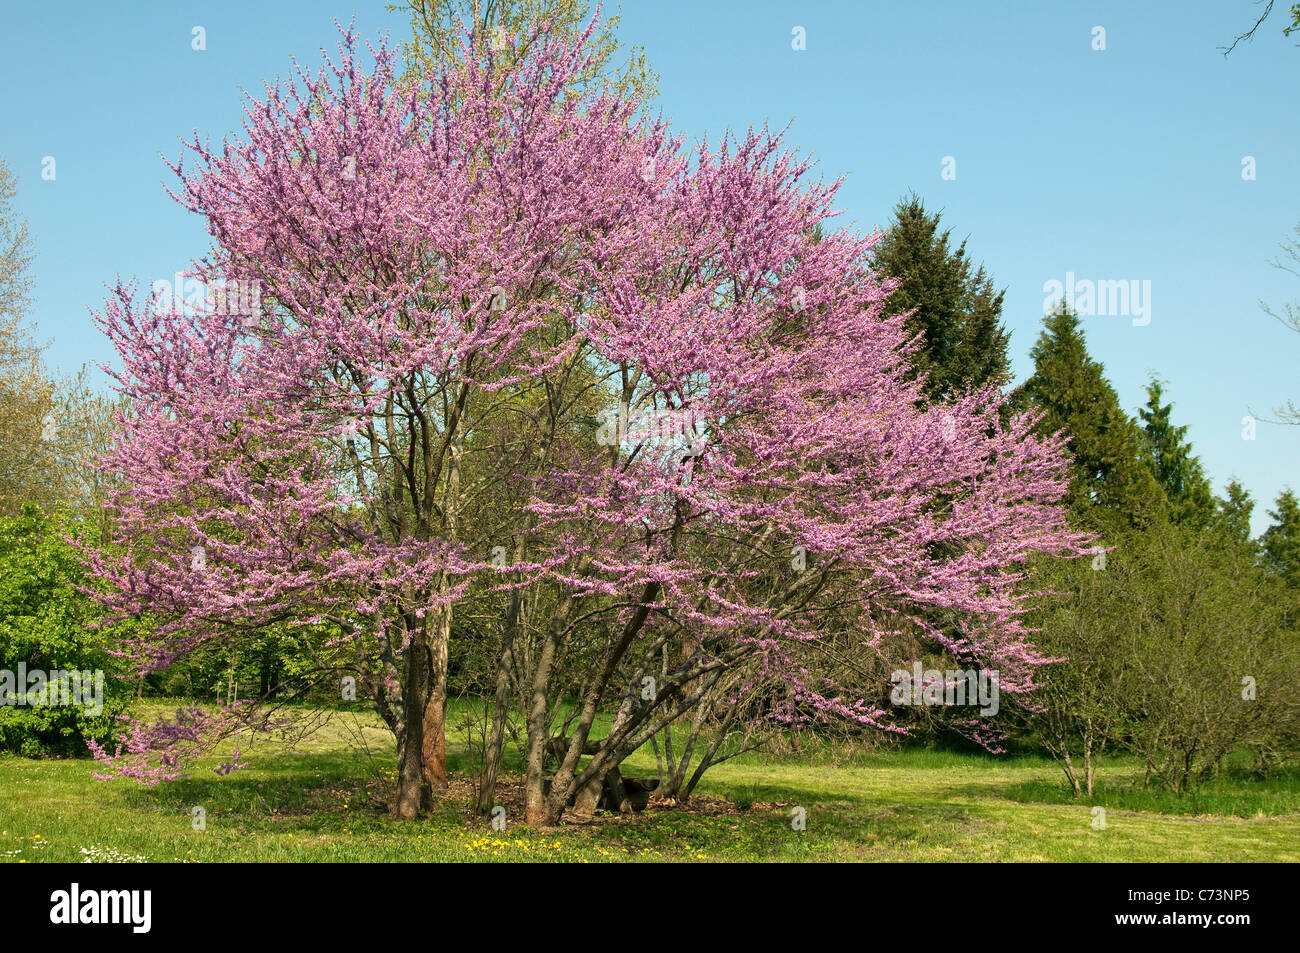 Judas Tree (Cercis siliquastrum). Flowering tree. Stock Photo